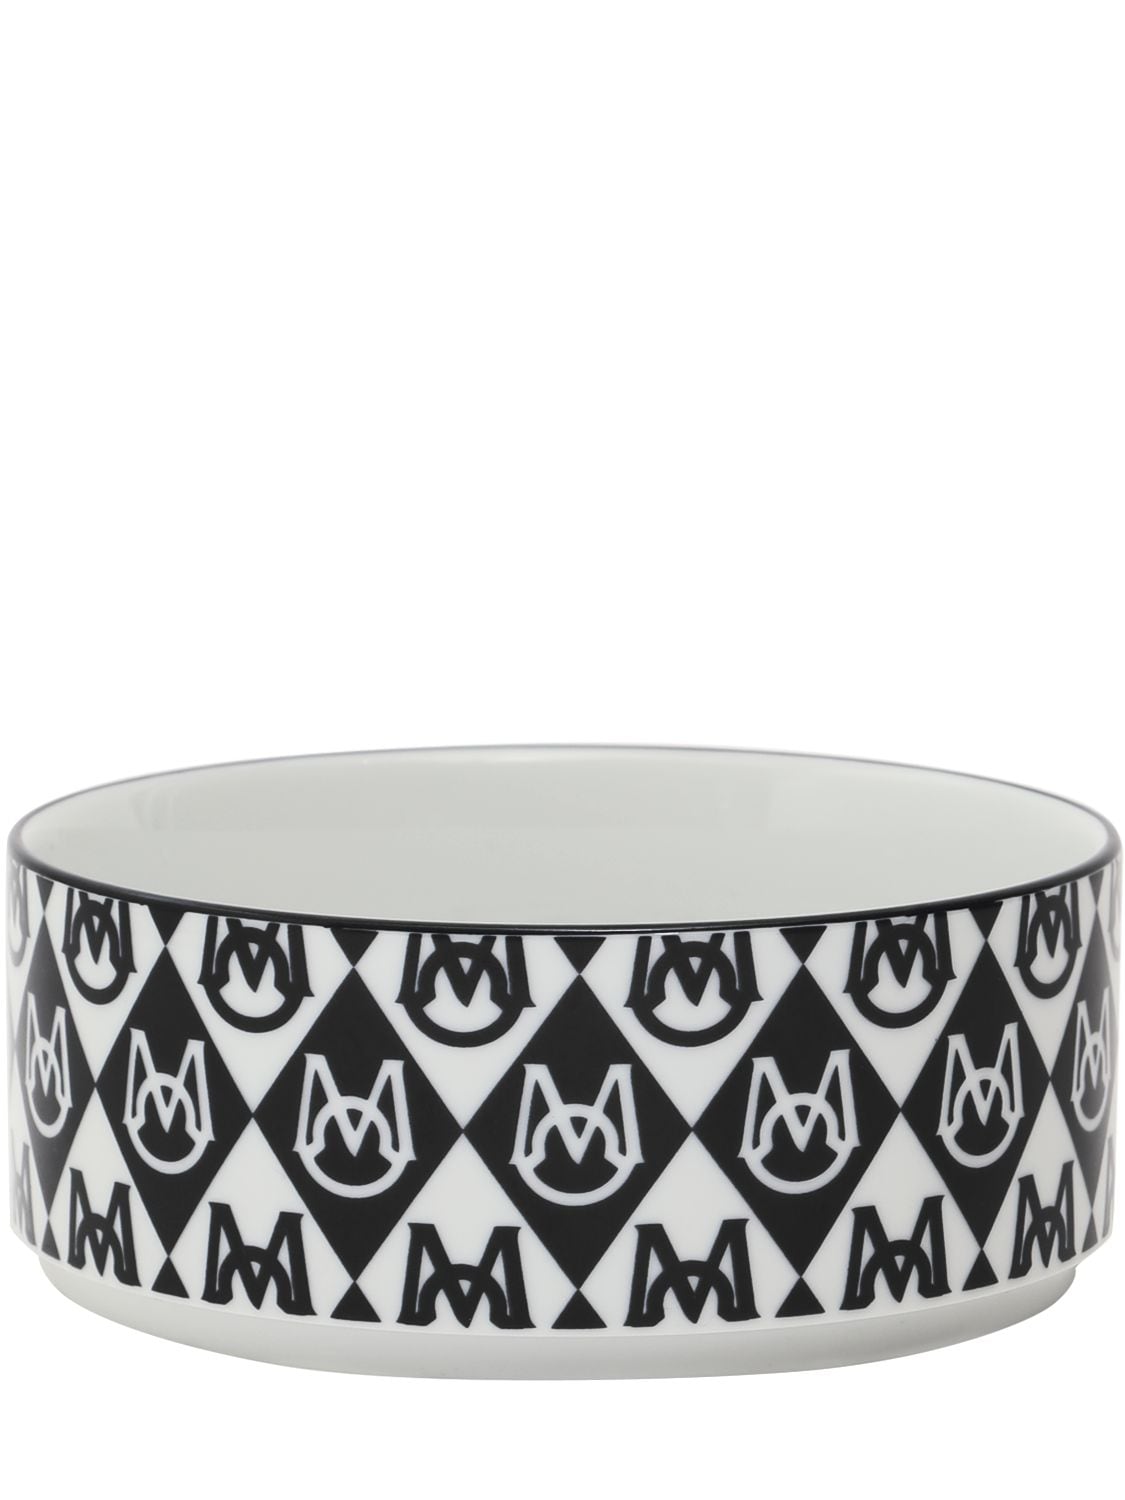 Moncler Genius Moncler X Poldo Monogram Dog Bowl In Black,white